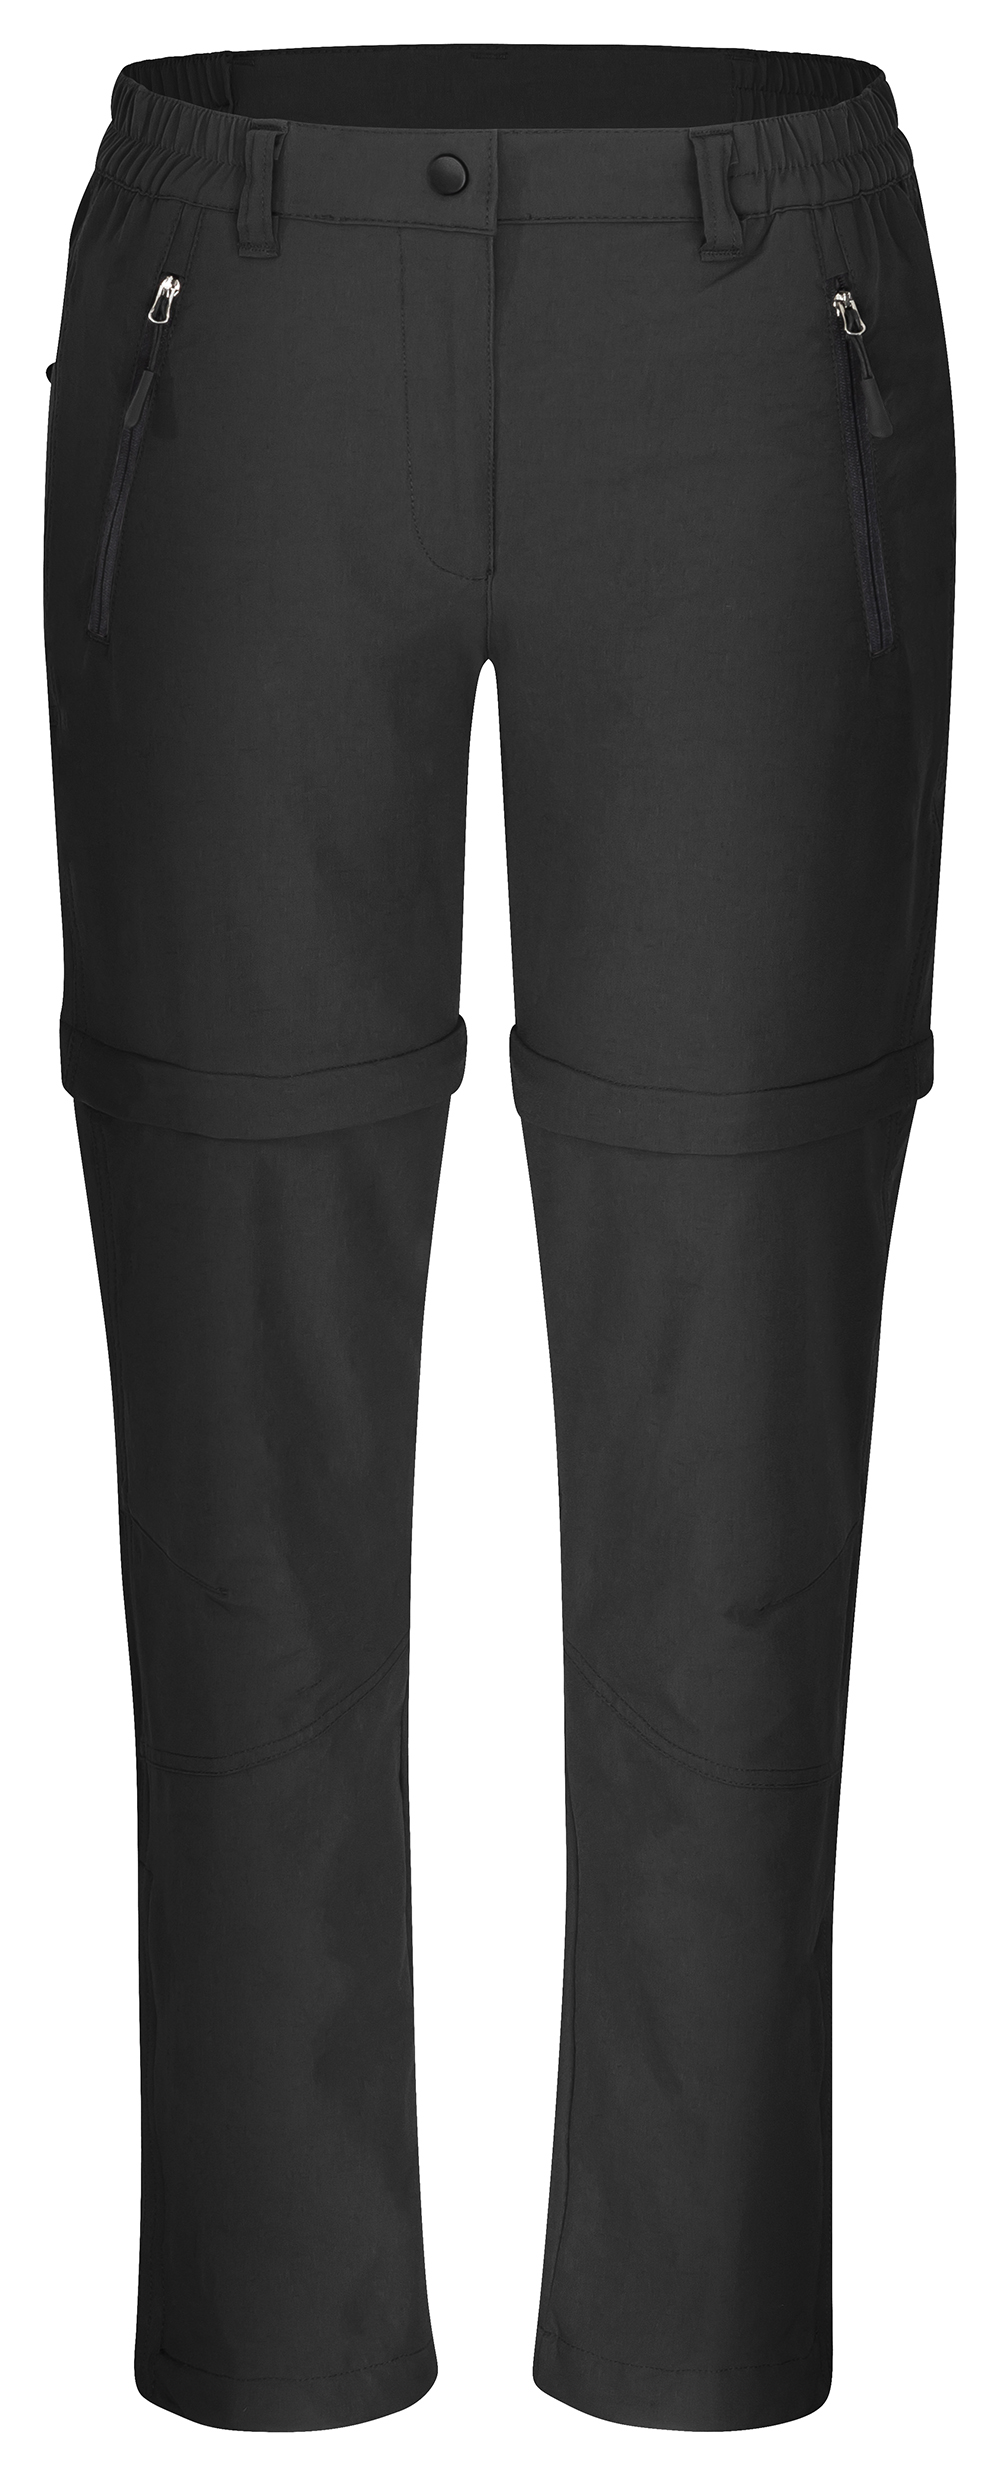 HS-Sportswear Damen High Performance BUEBON AIRES 4-Way Strech Zipp Hose 84020 schwarz